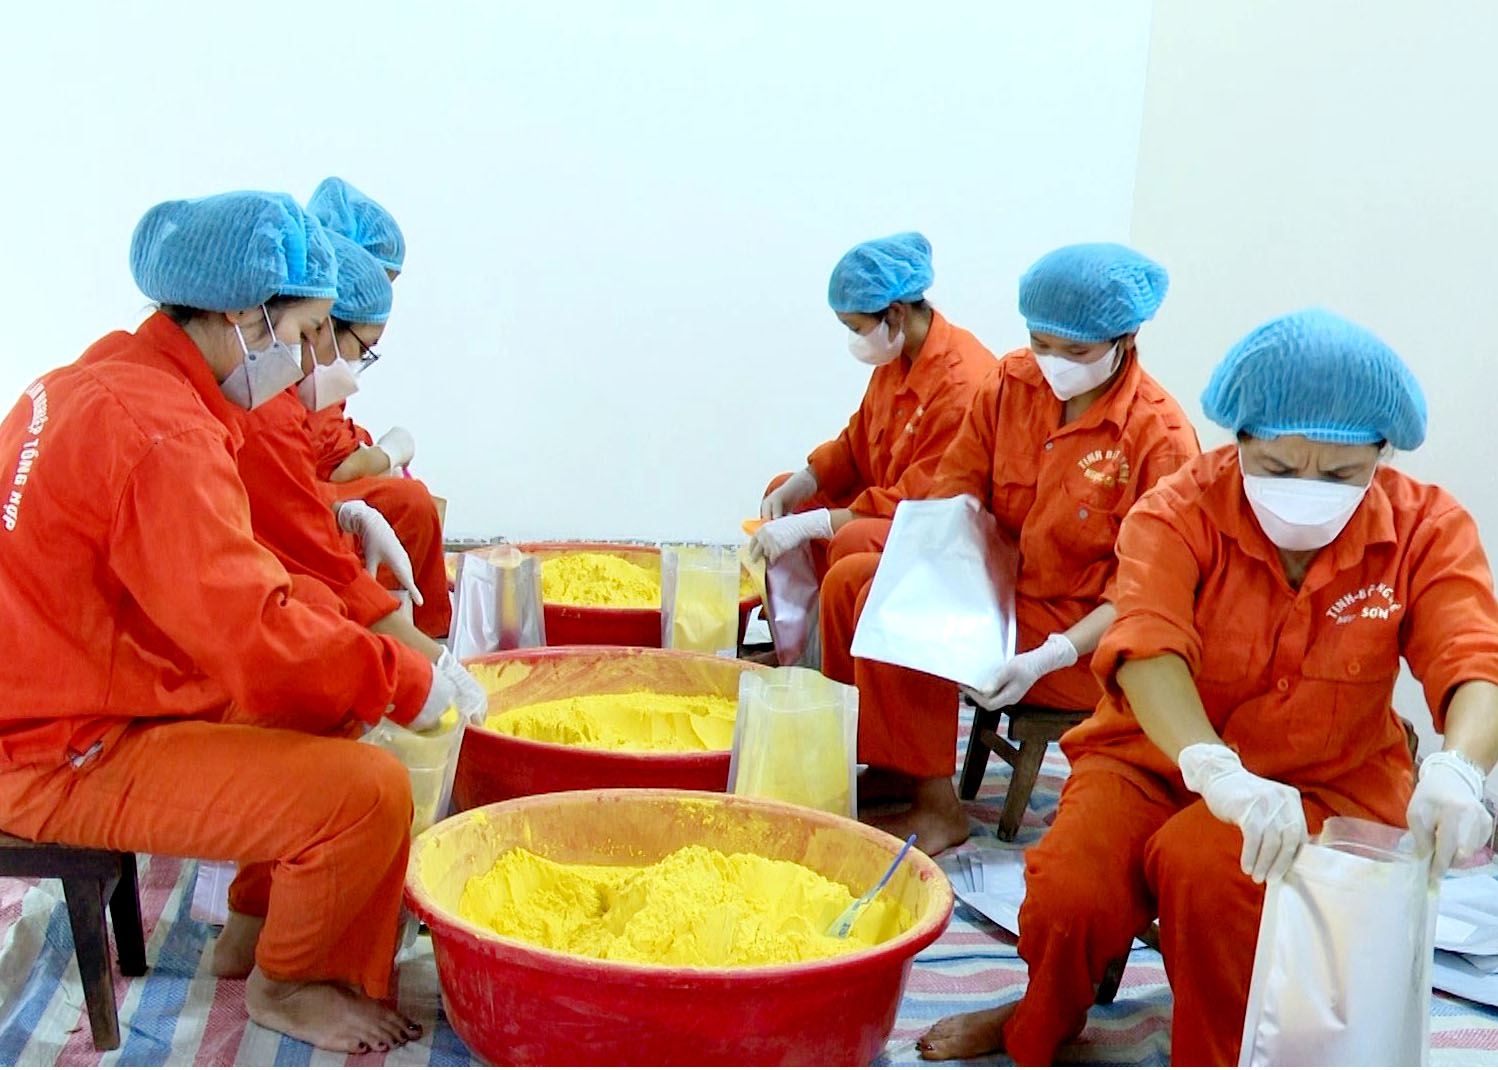  Hợp tác xã Nông lâm nghiệp tổng hợp Ngọc Sơn đi đầu trong sản xuất tinh bột nghệ.